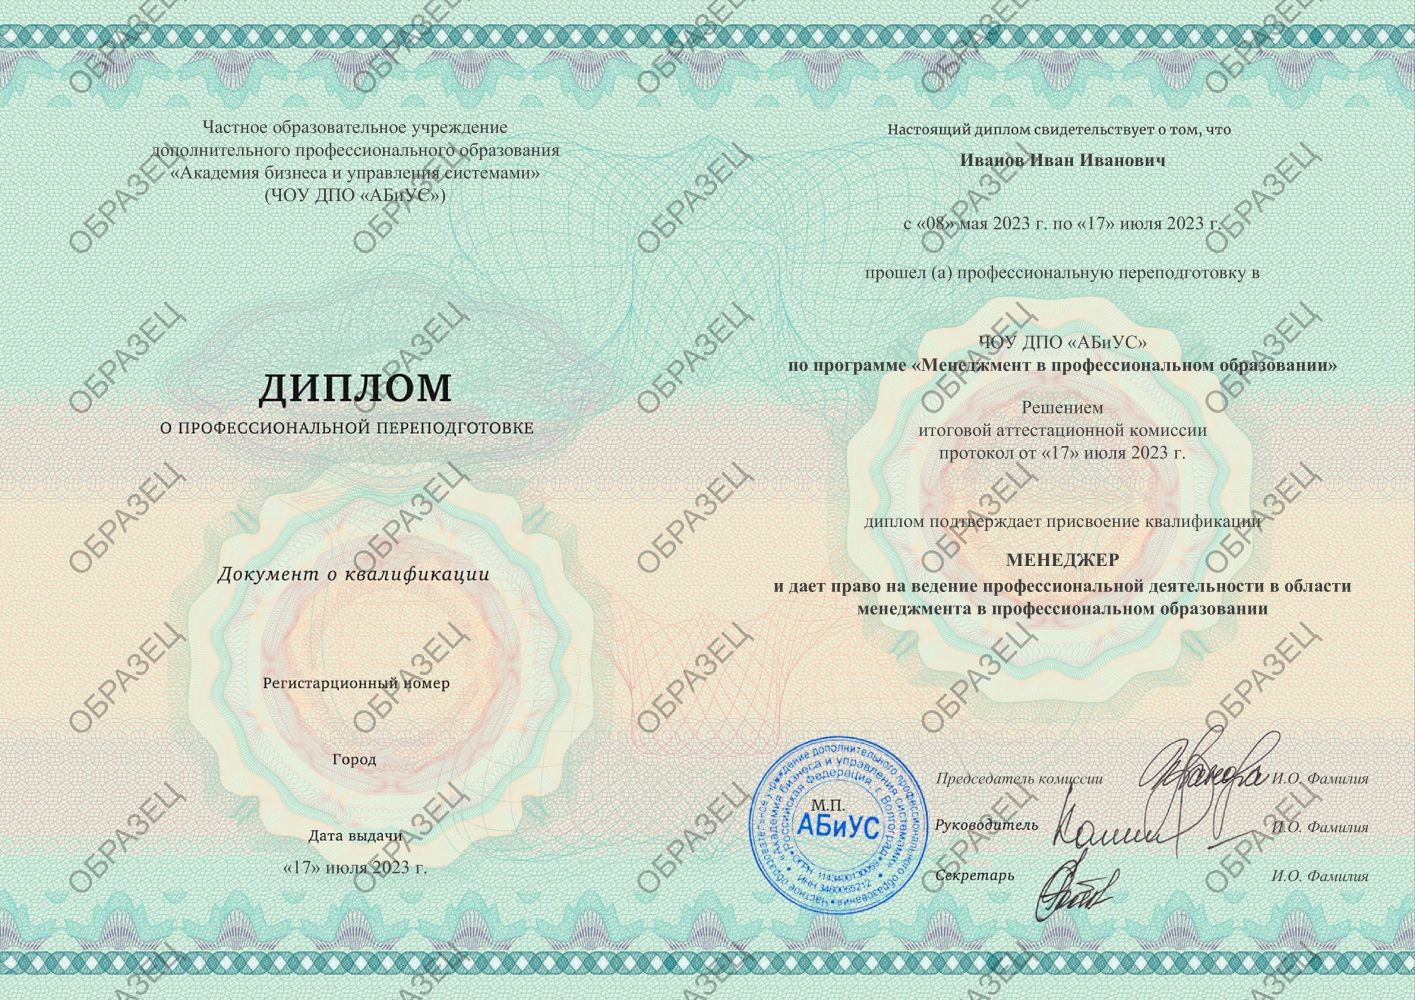 Диплом Менеджмент в профессиональном образовании 260 часов 10188 руб.